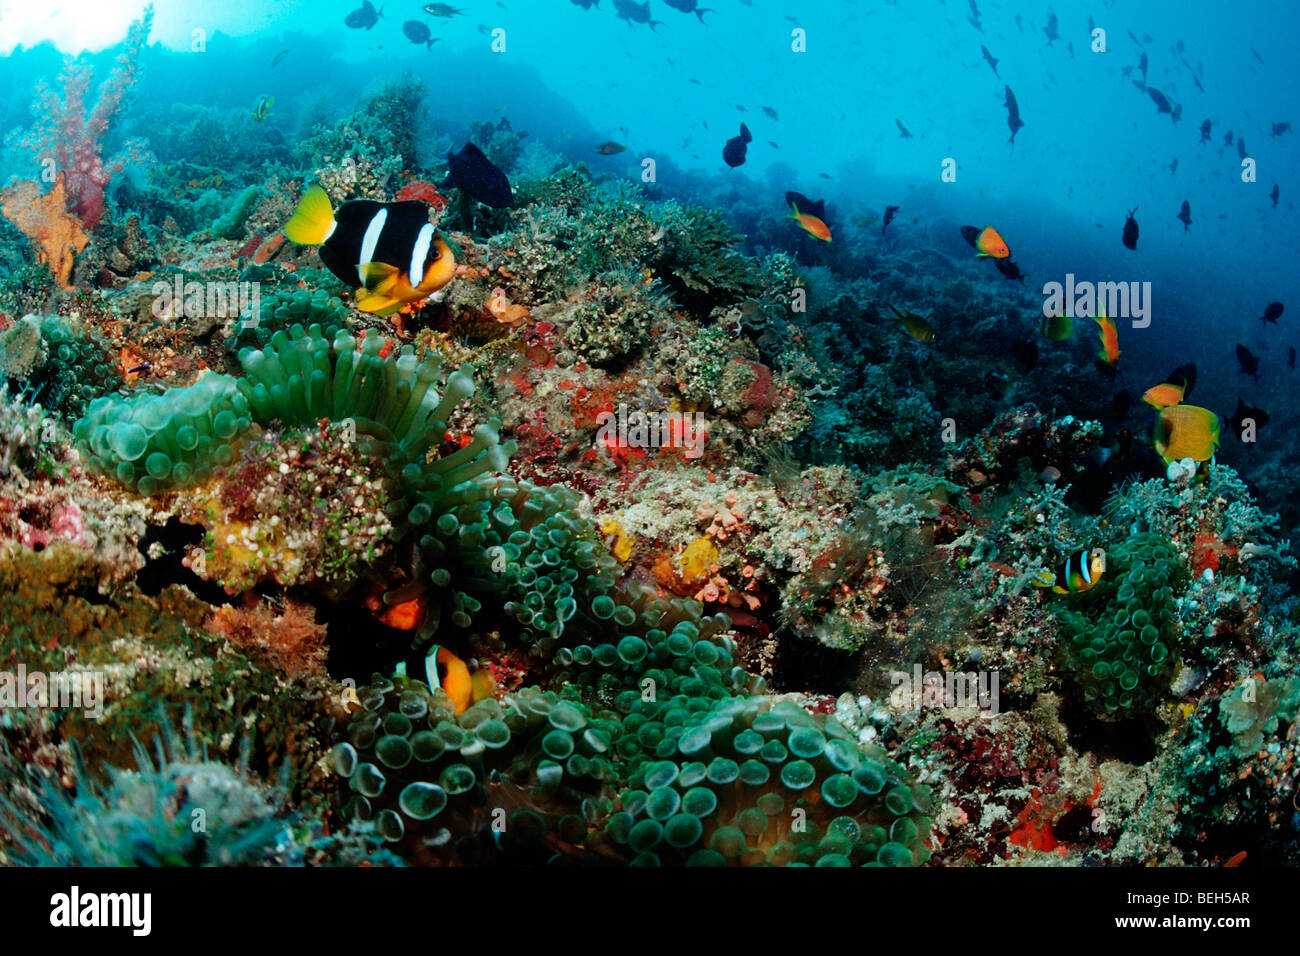 Clarks Anemonefish in Coral Reef, Amphiprion clarkii, Nord atollo di Ari, Maldive Foto Stock